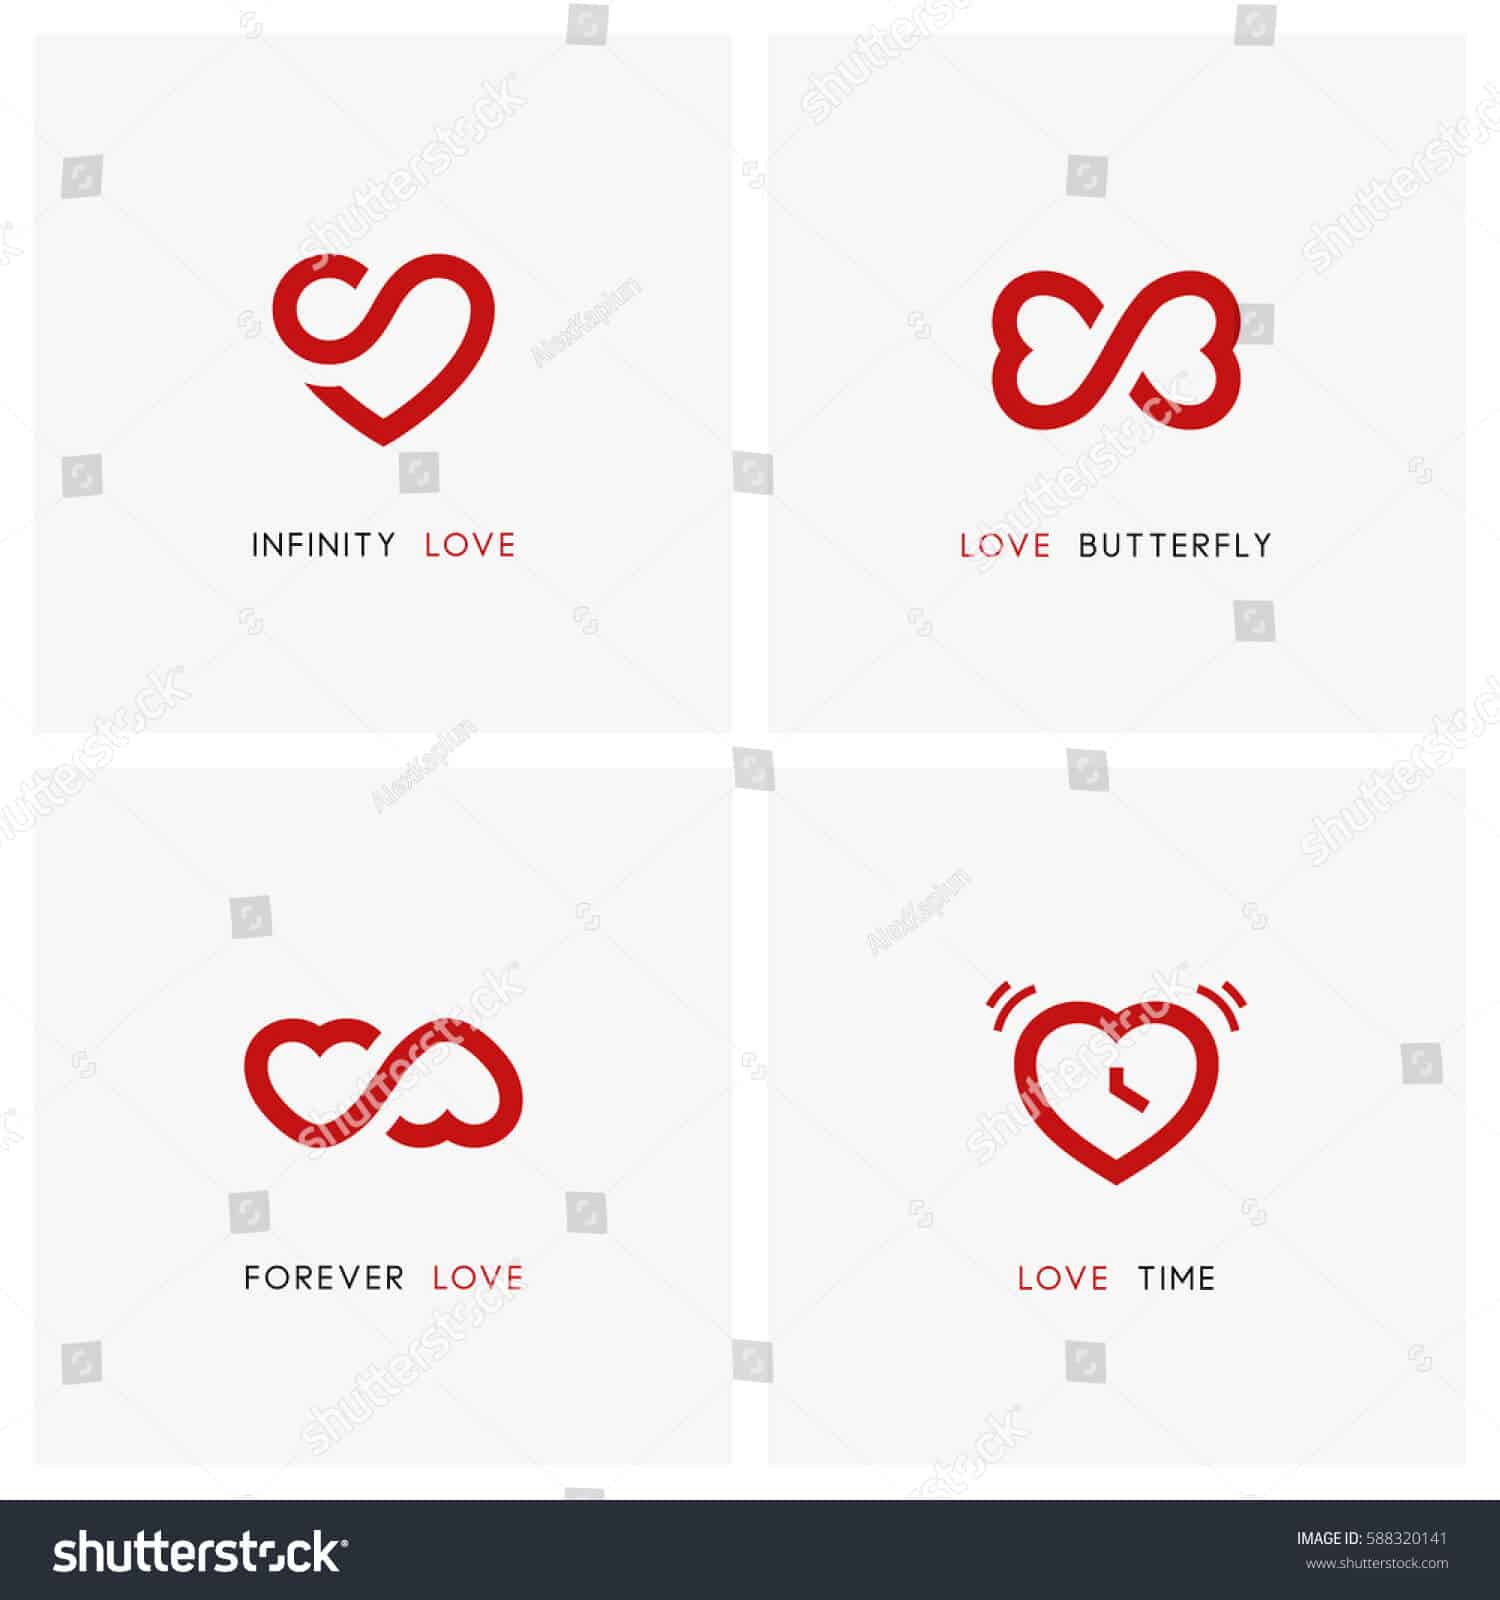 1 triệu 600 ngàn vector biểu tượng tình yêu tuyệt đẹp trên Shutterstock